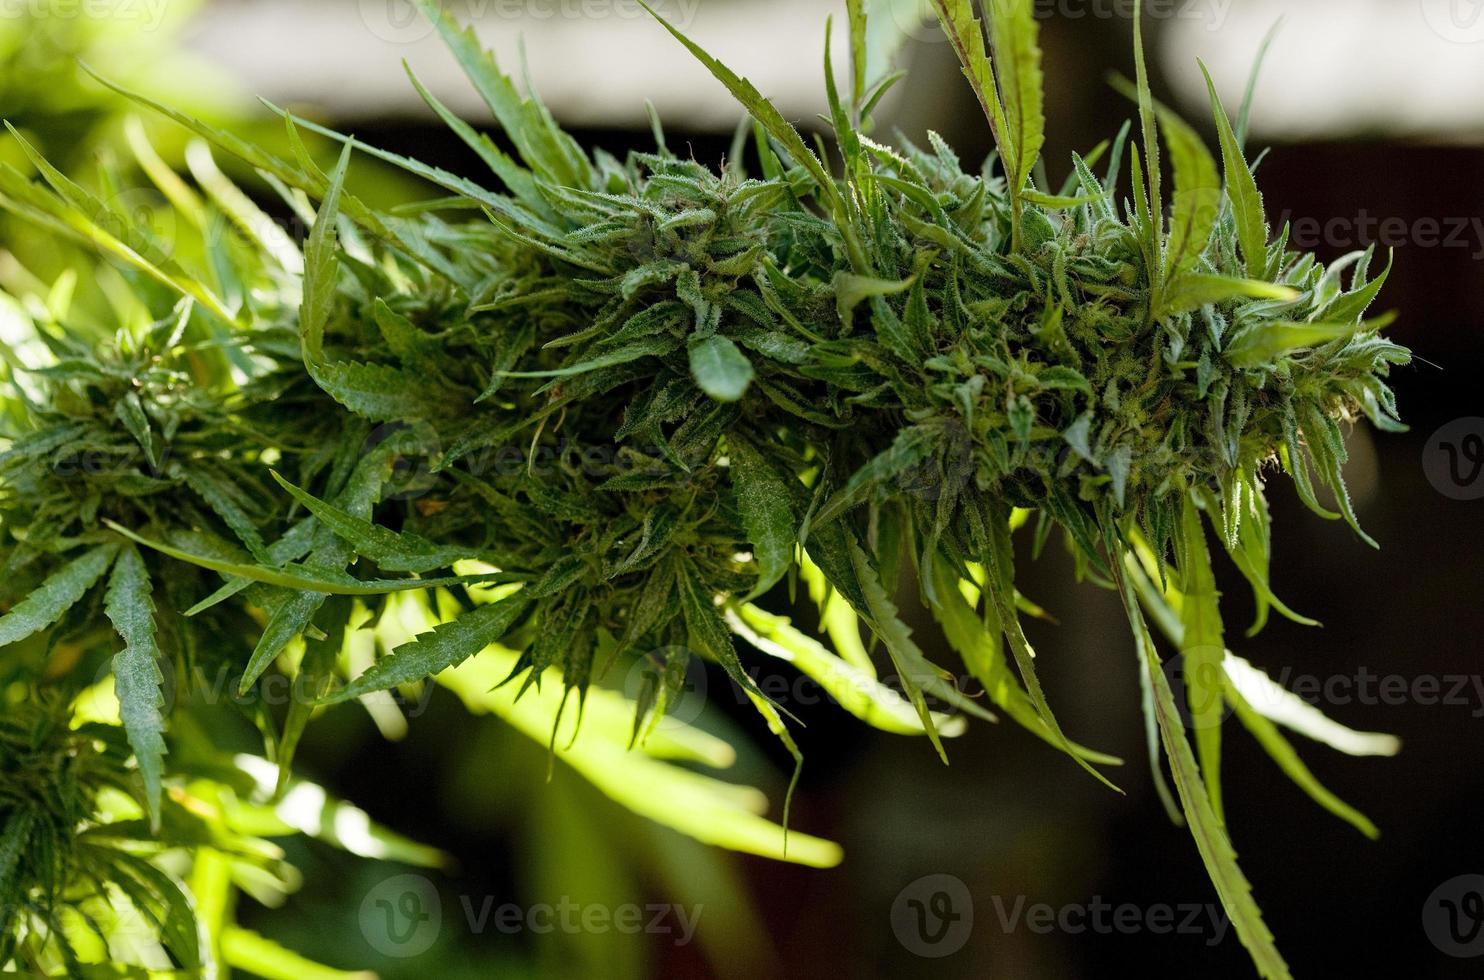 culture de cannabis sur une terrasse à madrid photo